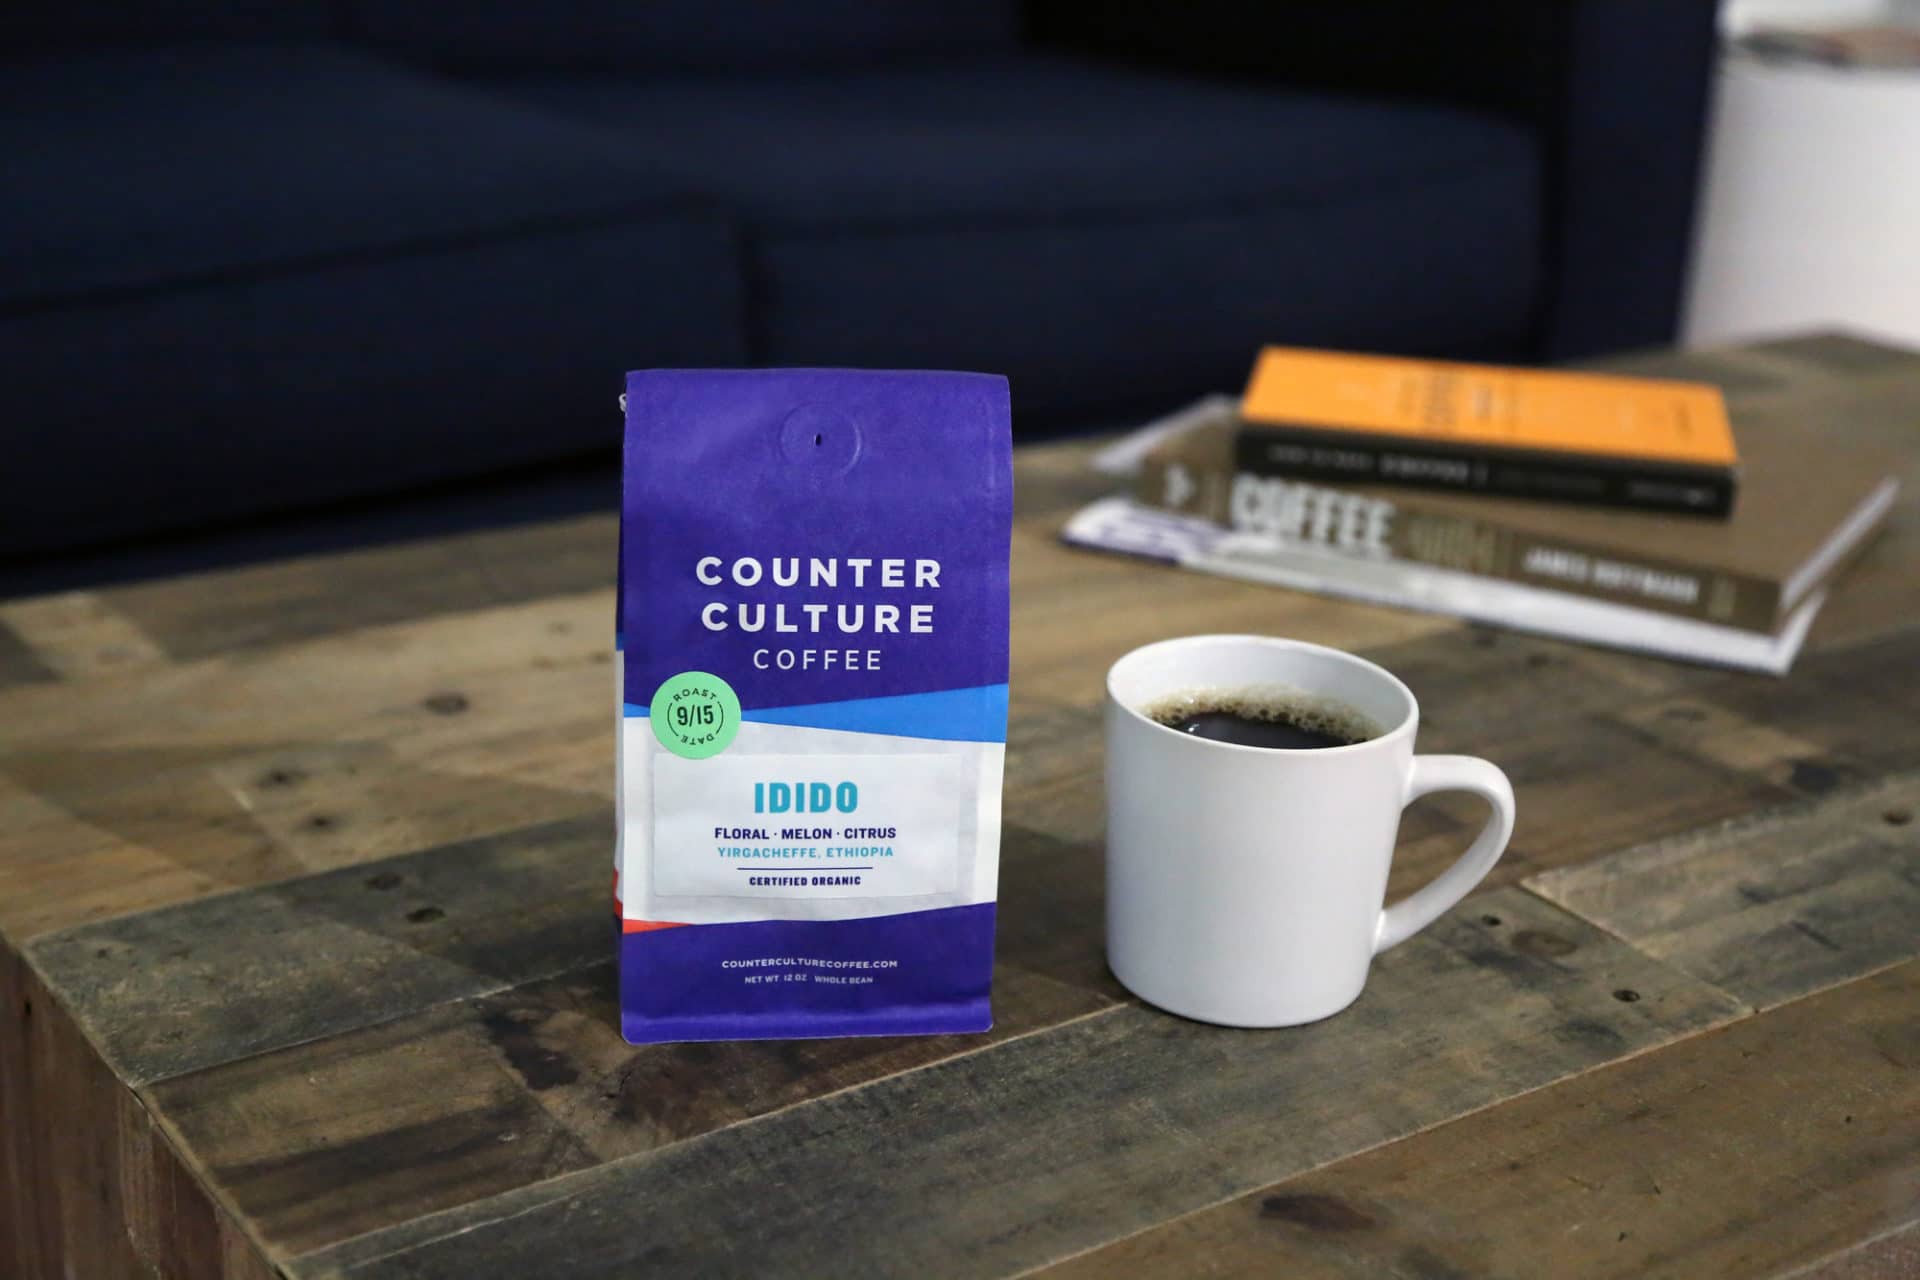 Idido - Counter Culture Coffee